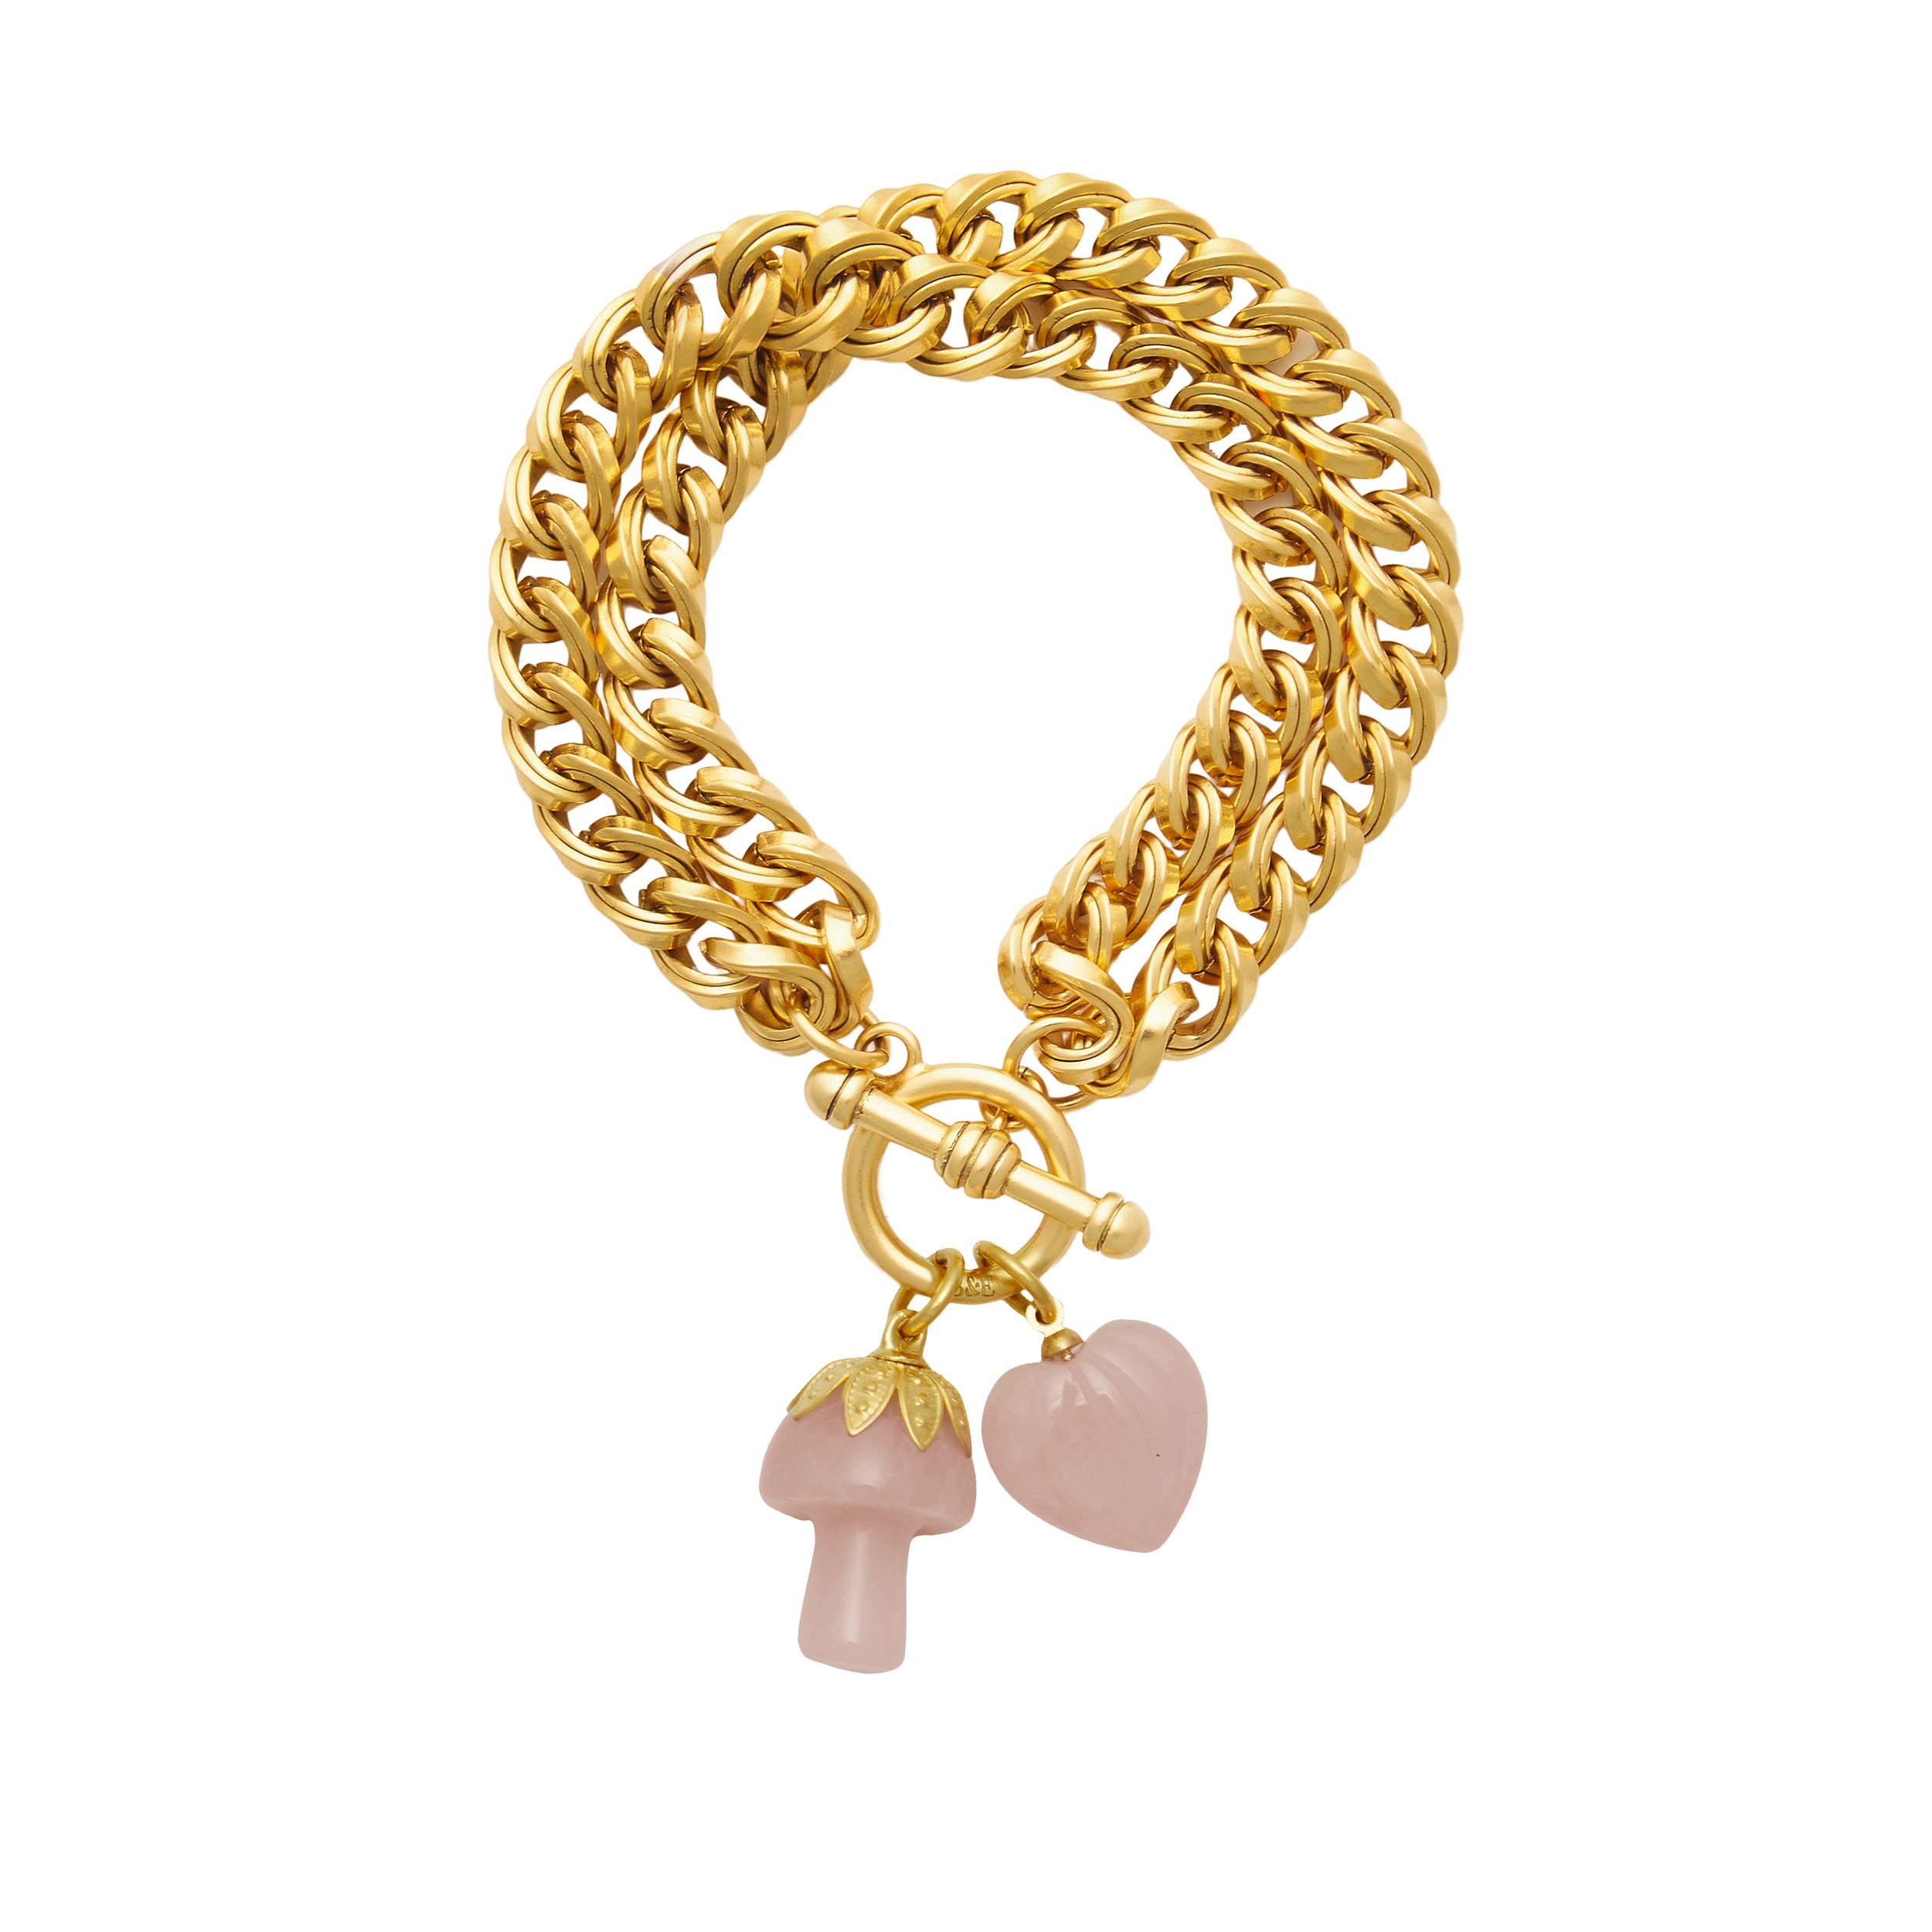 Amazon.com: Emojem Charm Bracelet | 18K Gold Plated | Emoji Jewelry |  Womens Bracelet Gift (Ten Charms): Clothing, Shoes & Jewelry